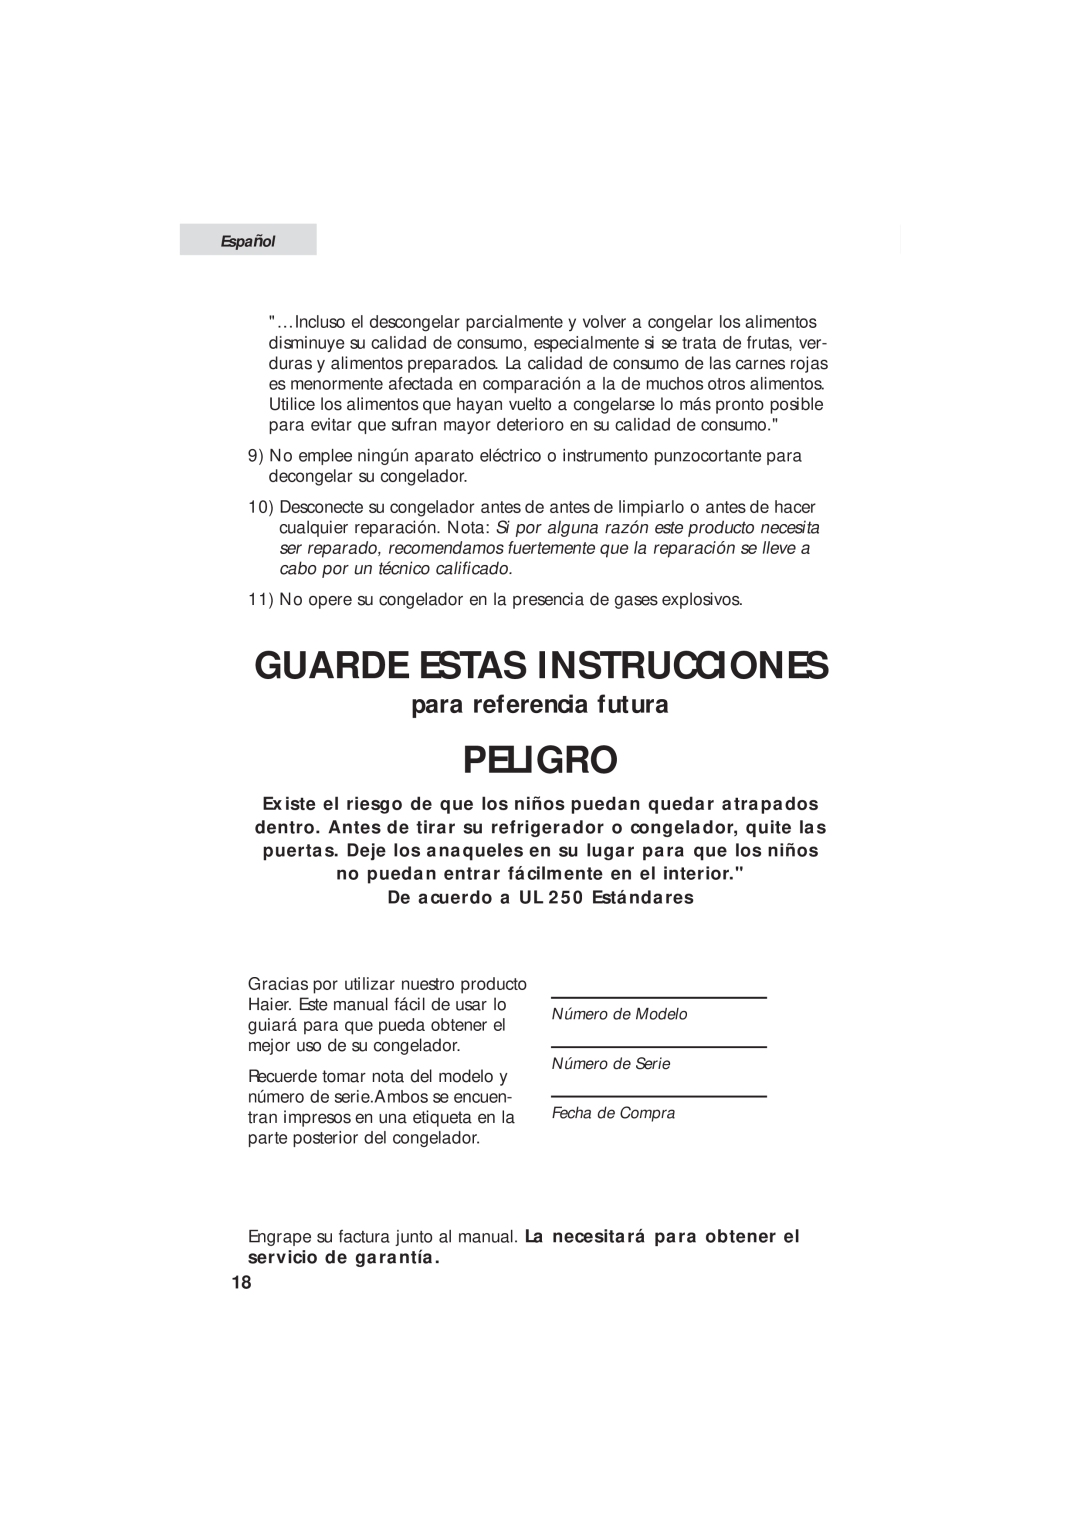 Haier HUM013EA Guarde Estas Instrucciones, Peligro, para referencia futura, De acuerdo a UL 250 Estándares, Español 